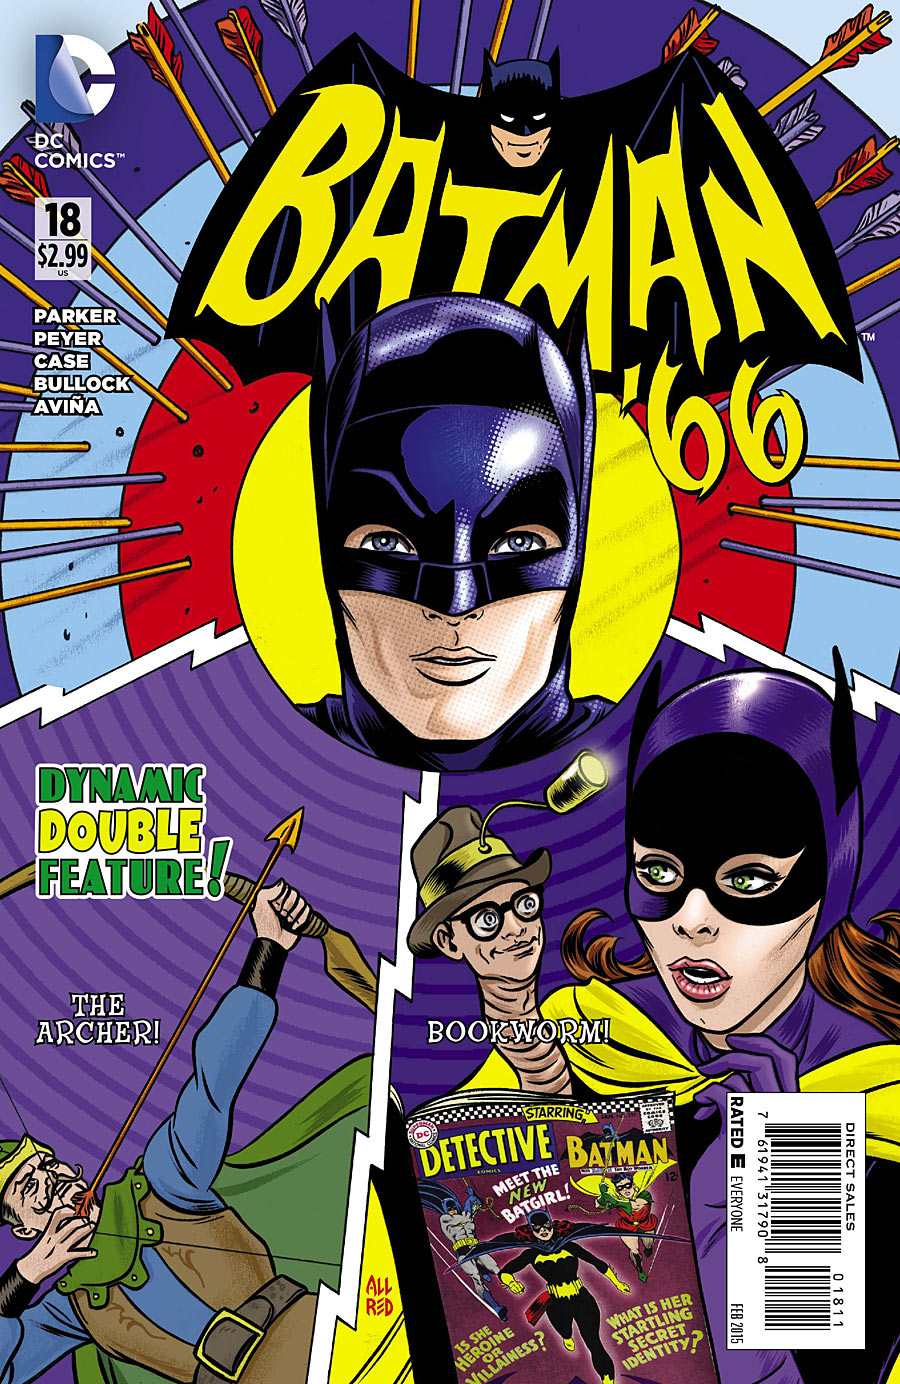 1 Batman 66 Vol 